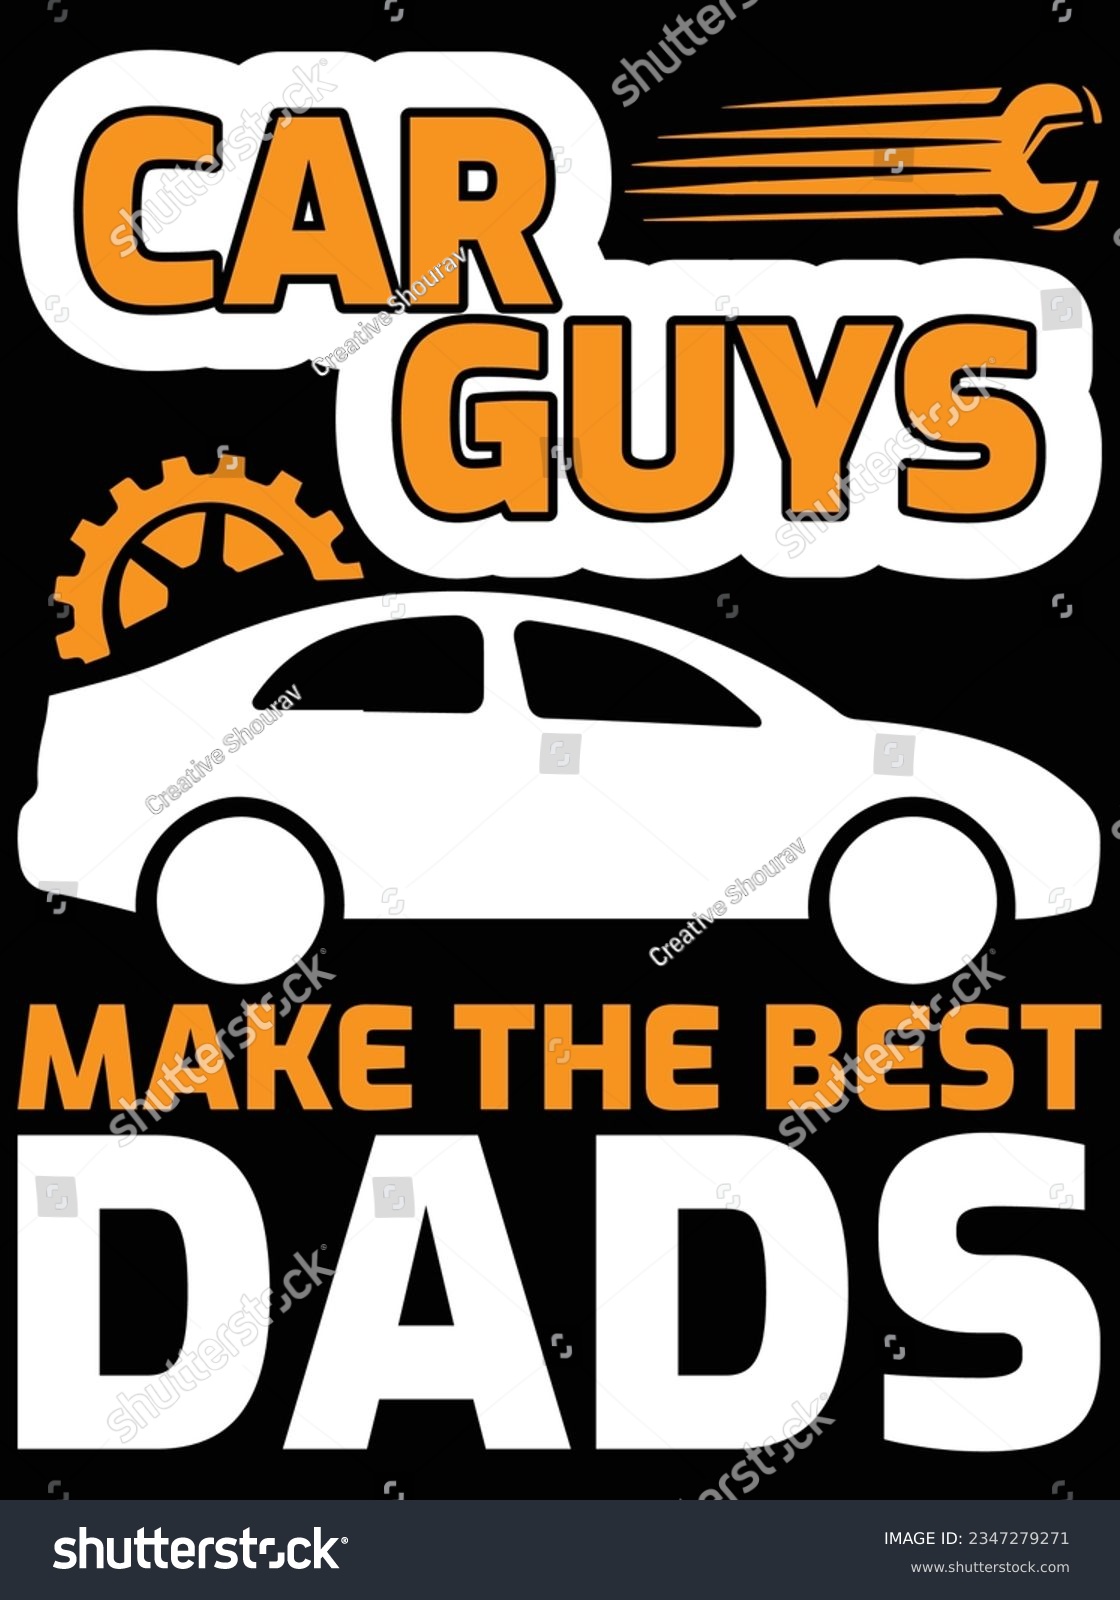 SVG of Car guys make the best dads vector art design, eps file. design file for t-shirt. SVG, EPS cuttable design file svg